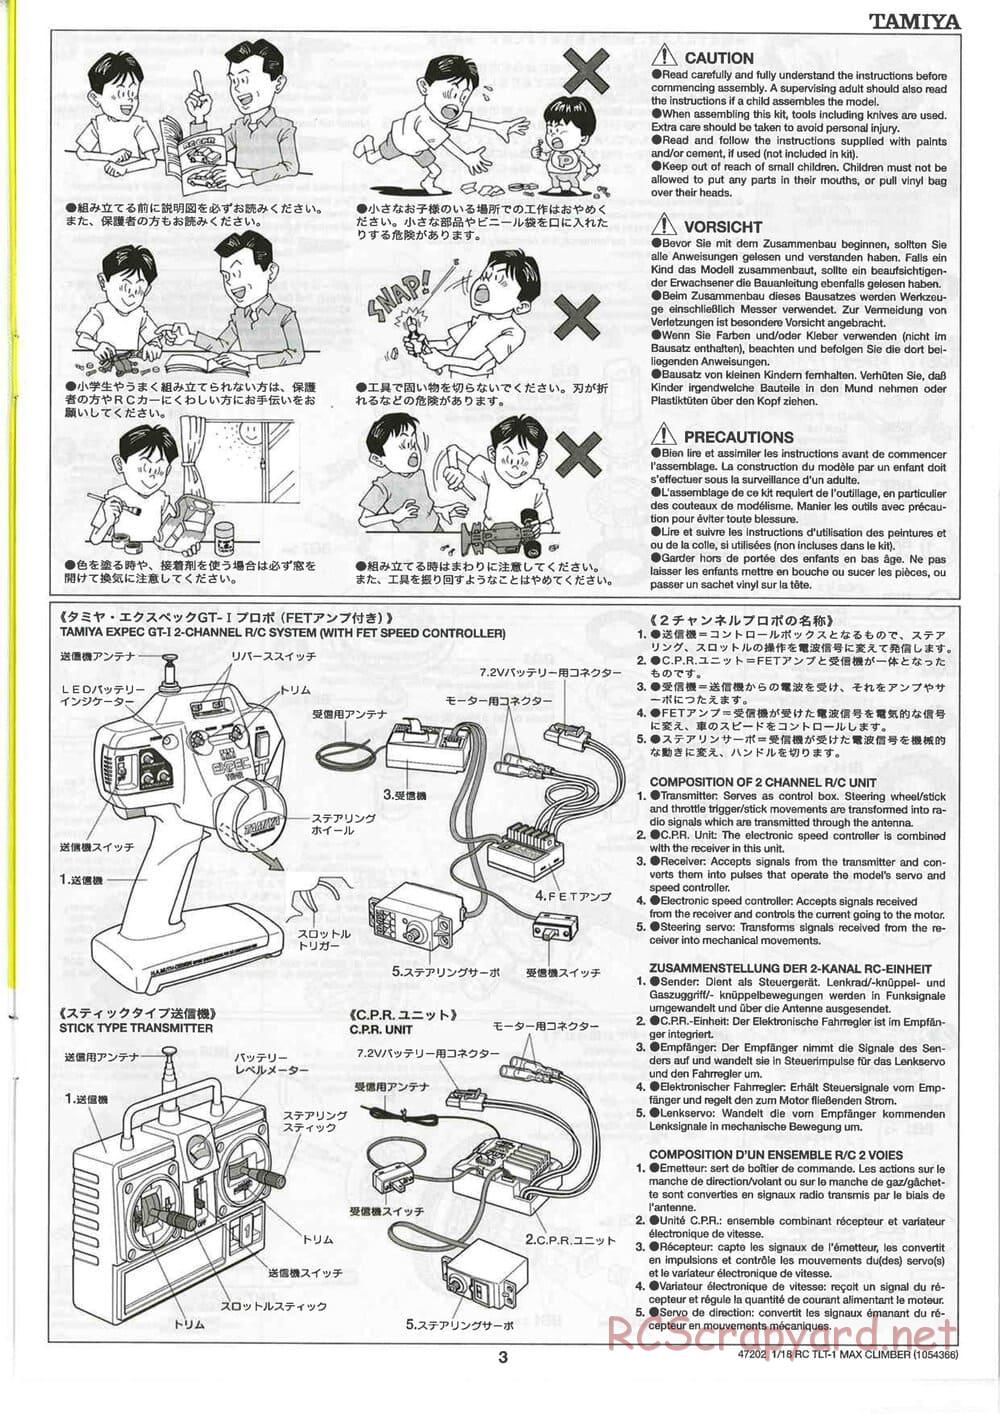 Tamiya - Max Climber - TLT-1 Chassis - Manual - Page 3